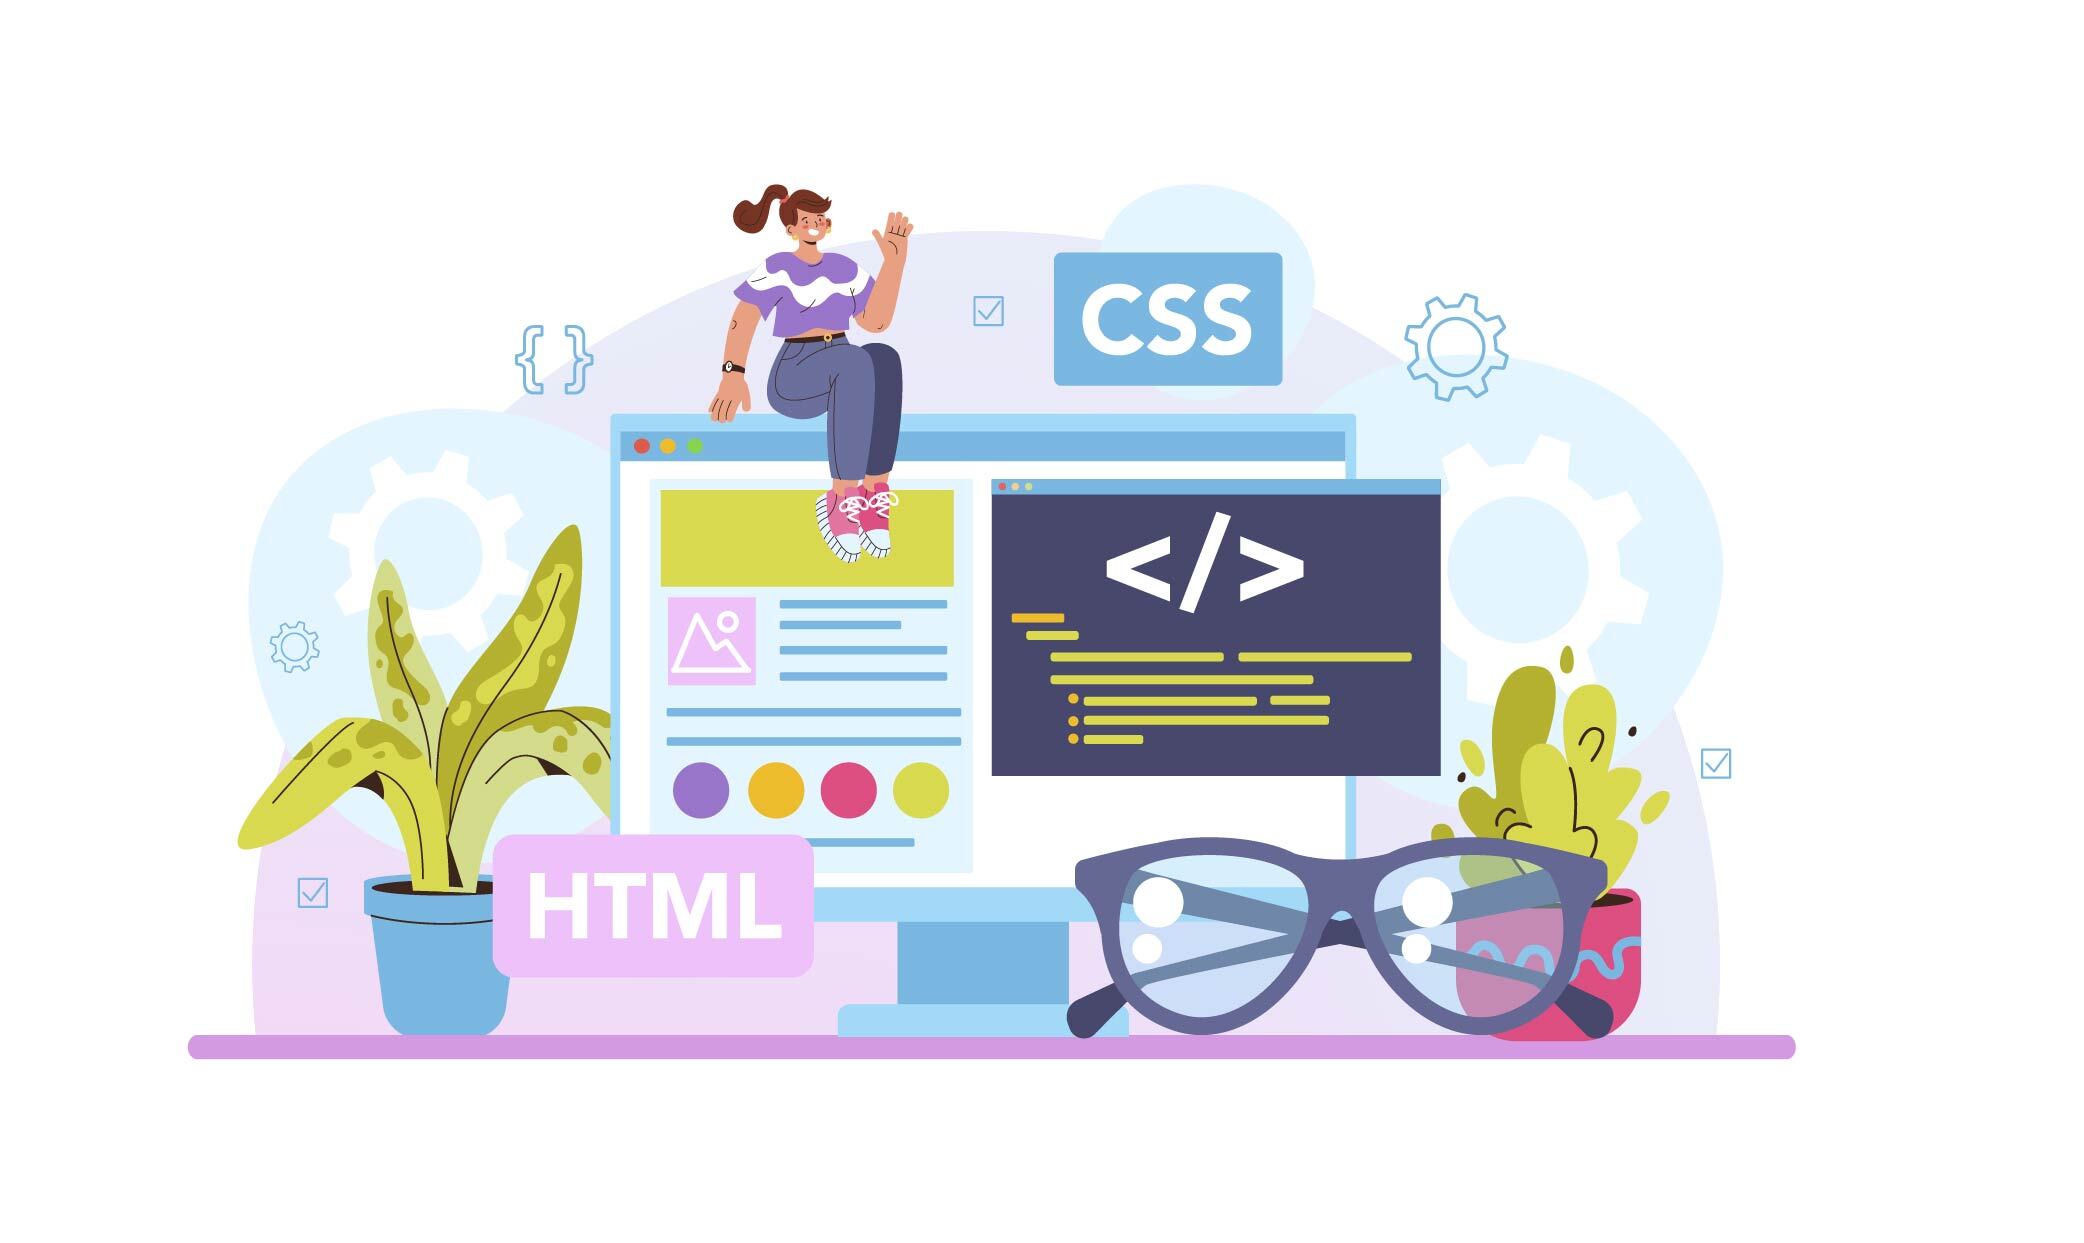 HTML Developer Job banner image showing job scops